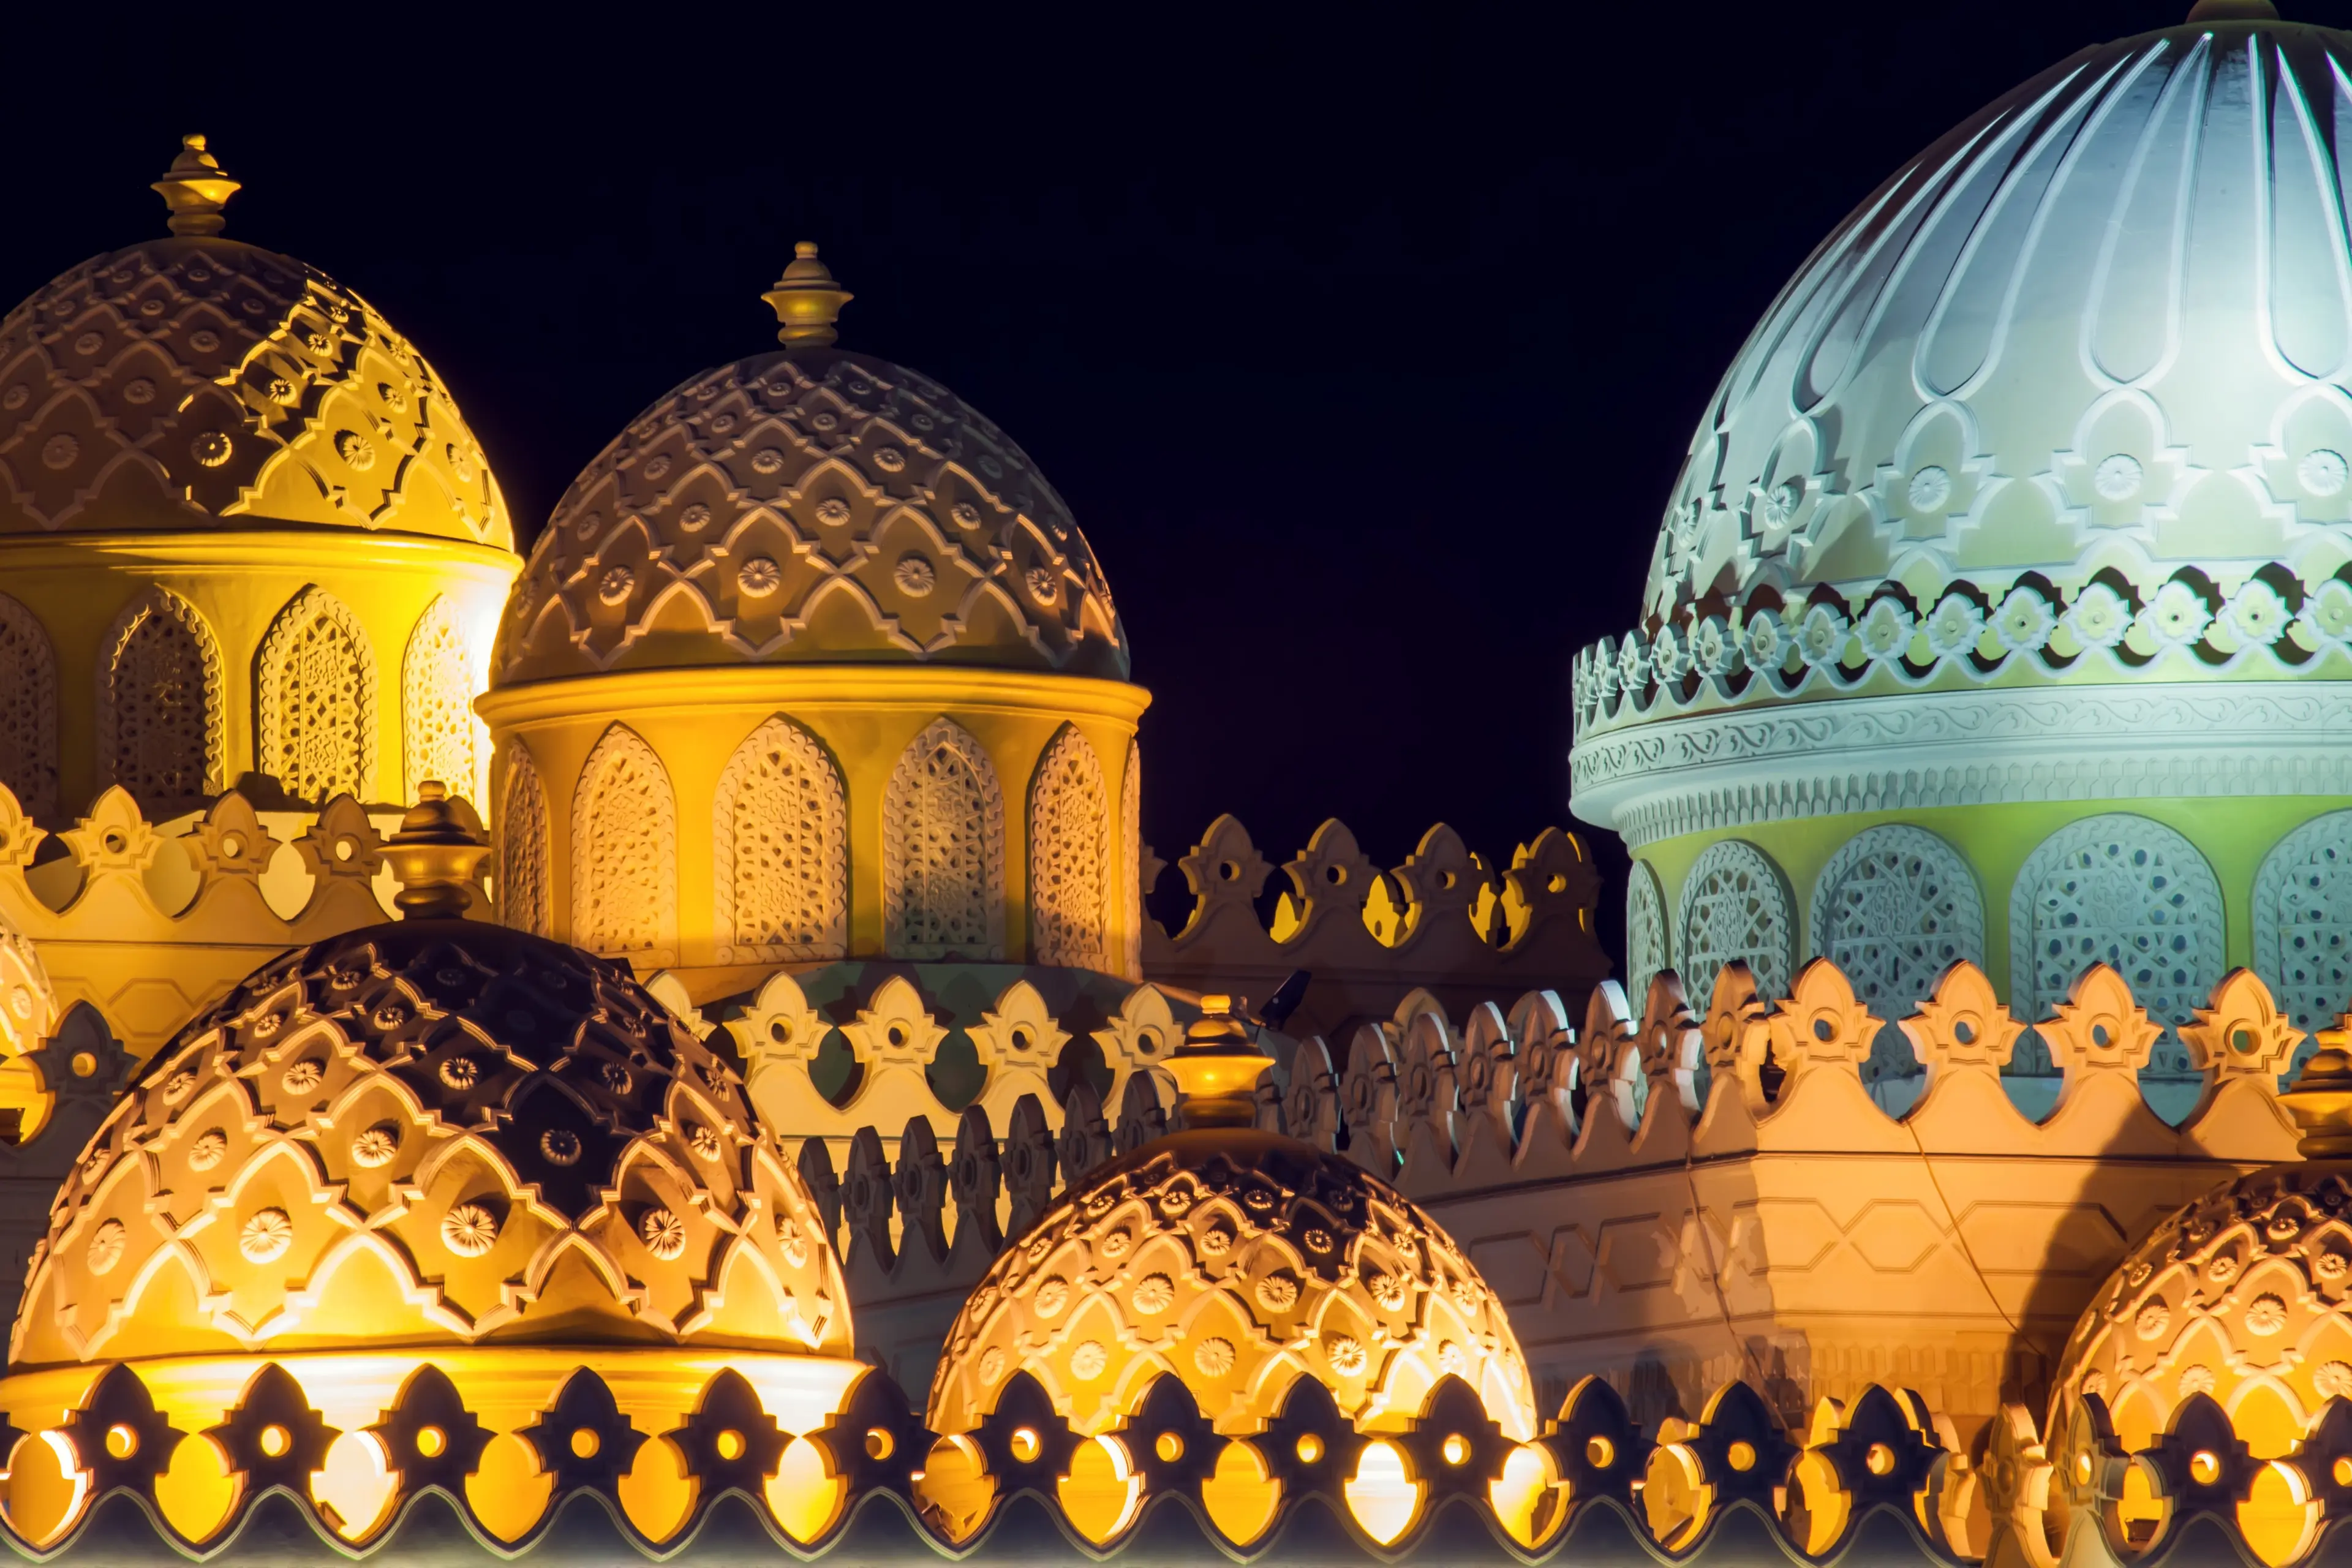 Domes of the El Mina Masjid mosque